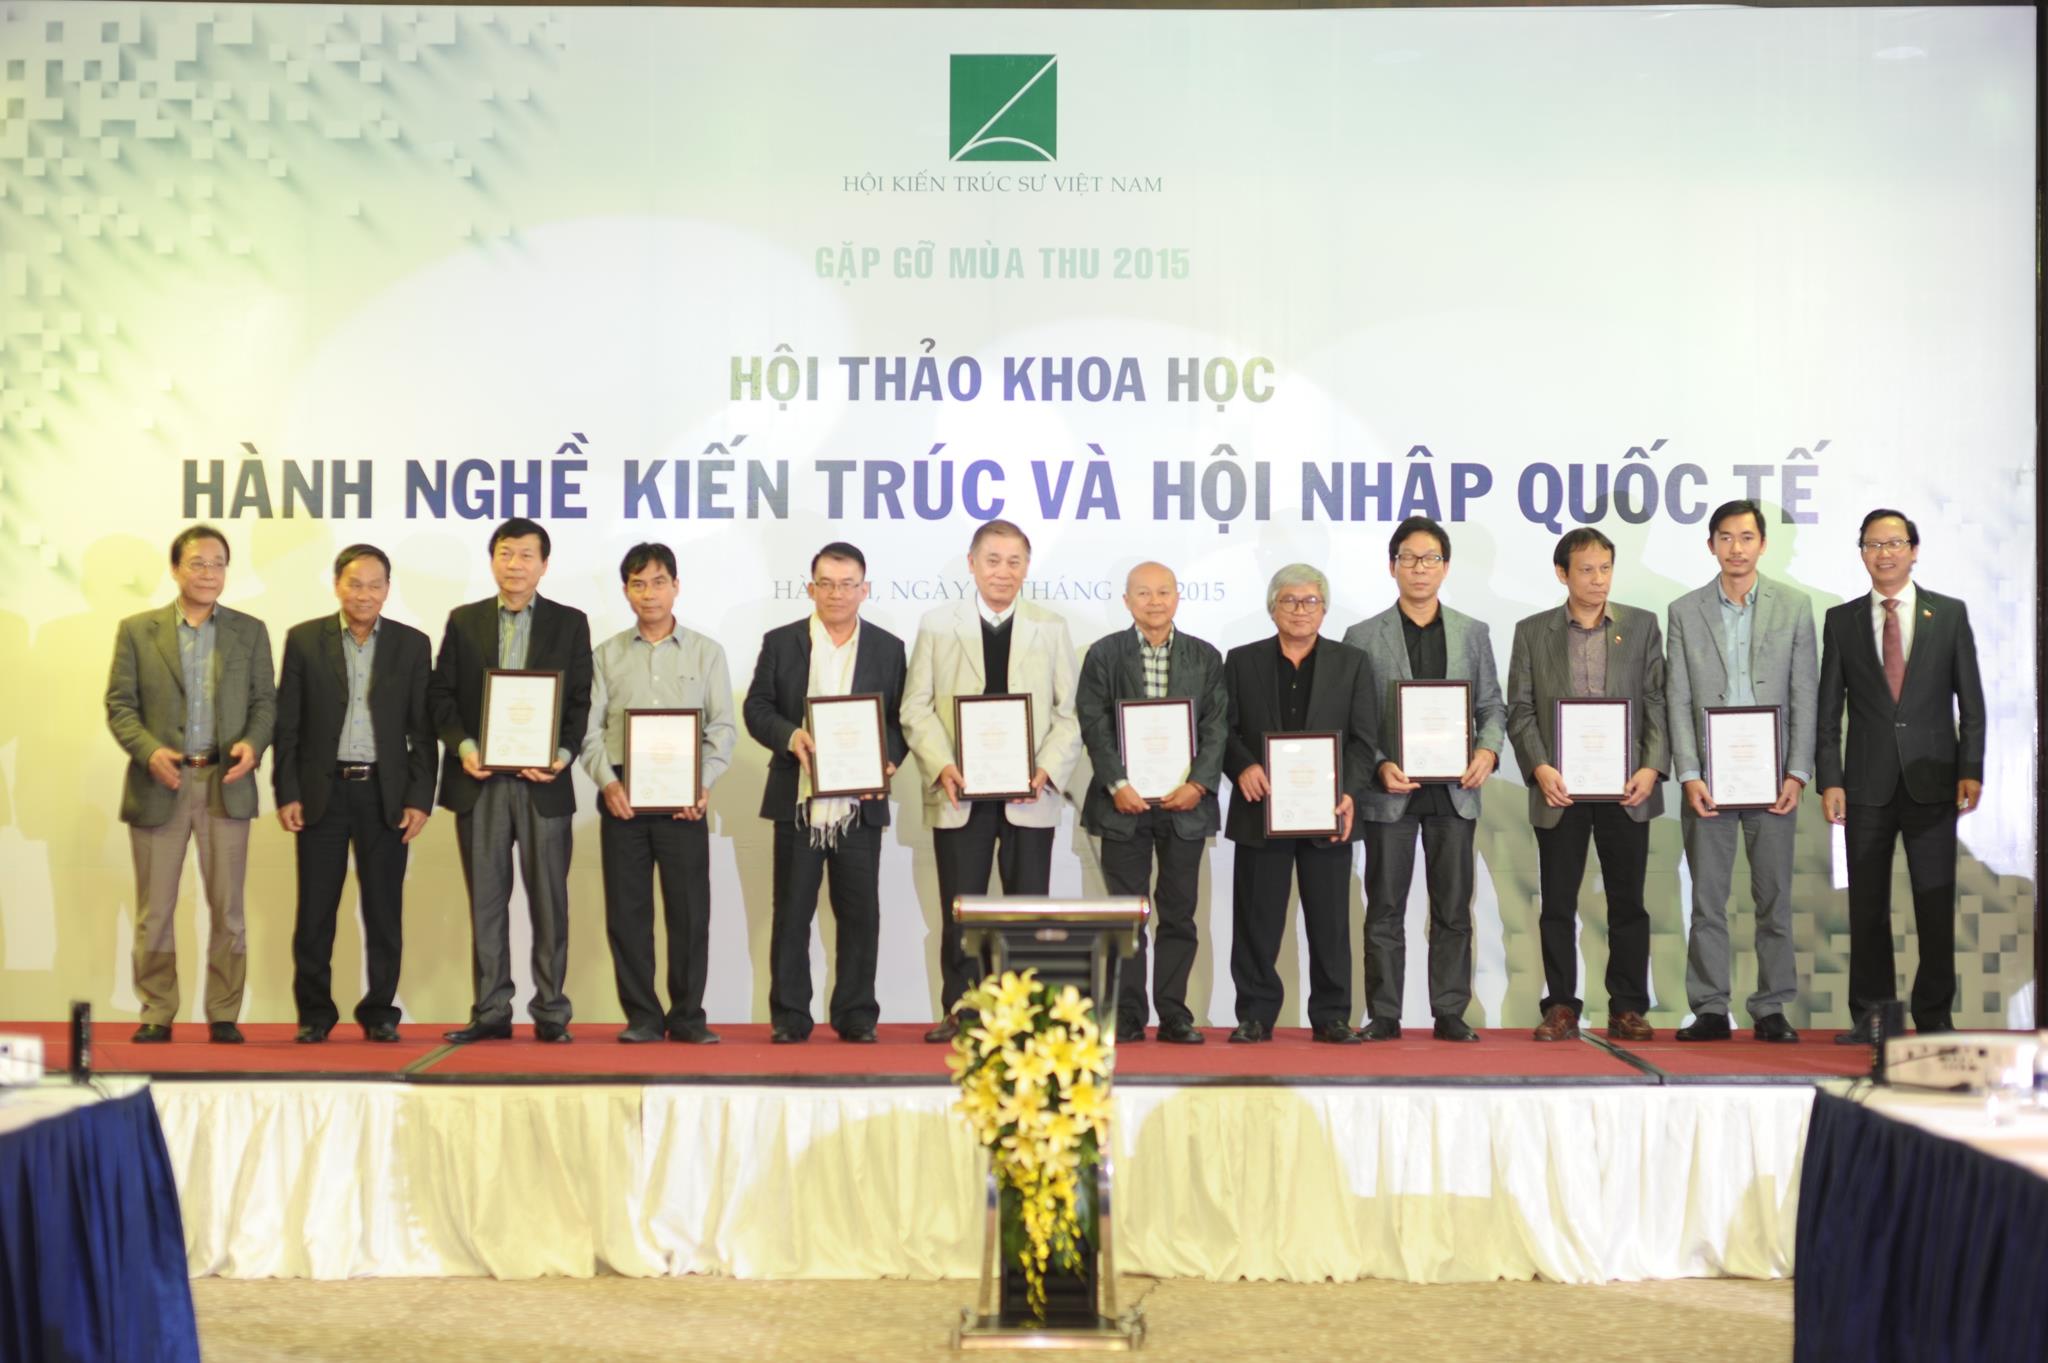 Những KTS đầu tiên tại Việt Nam nhận chứng chỉ KTS Asean ngày 28-11-2015 tại chương trình Gặp gỡ mùa thu 2015 do Hội KTS Việt Nam tổ chức